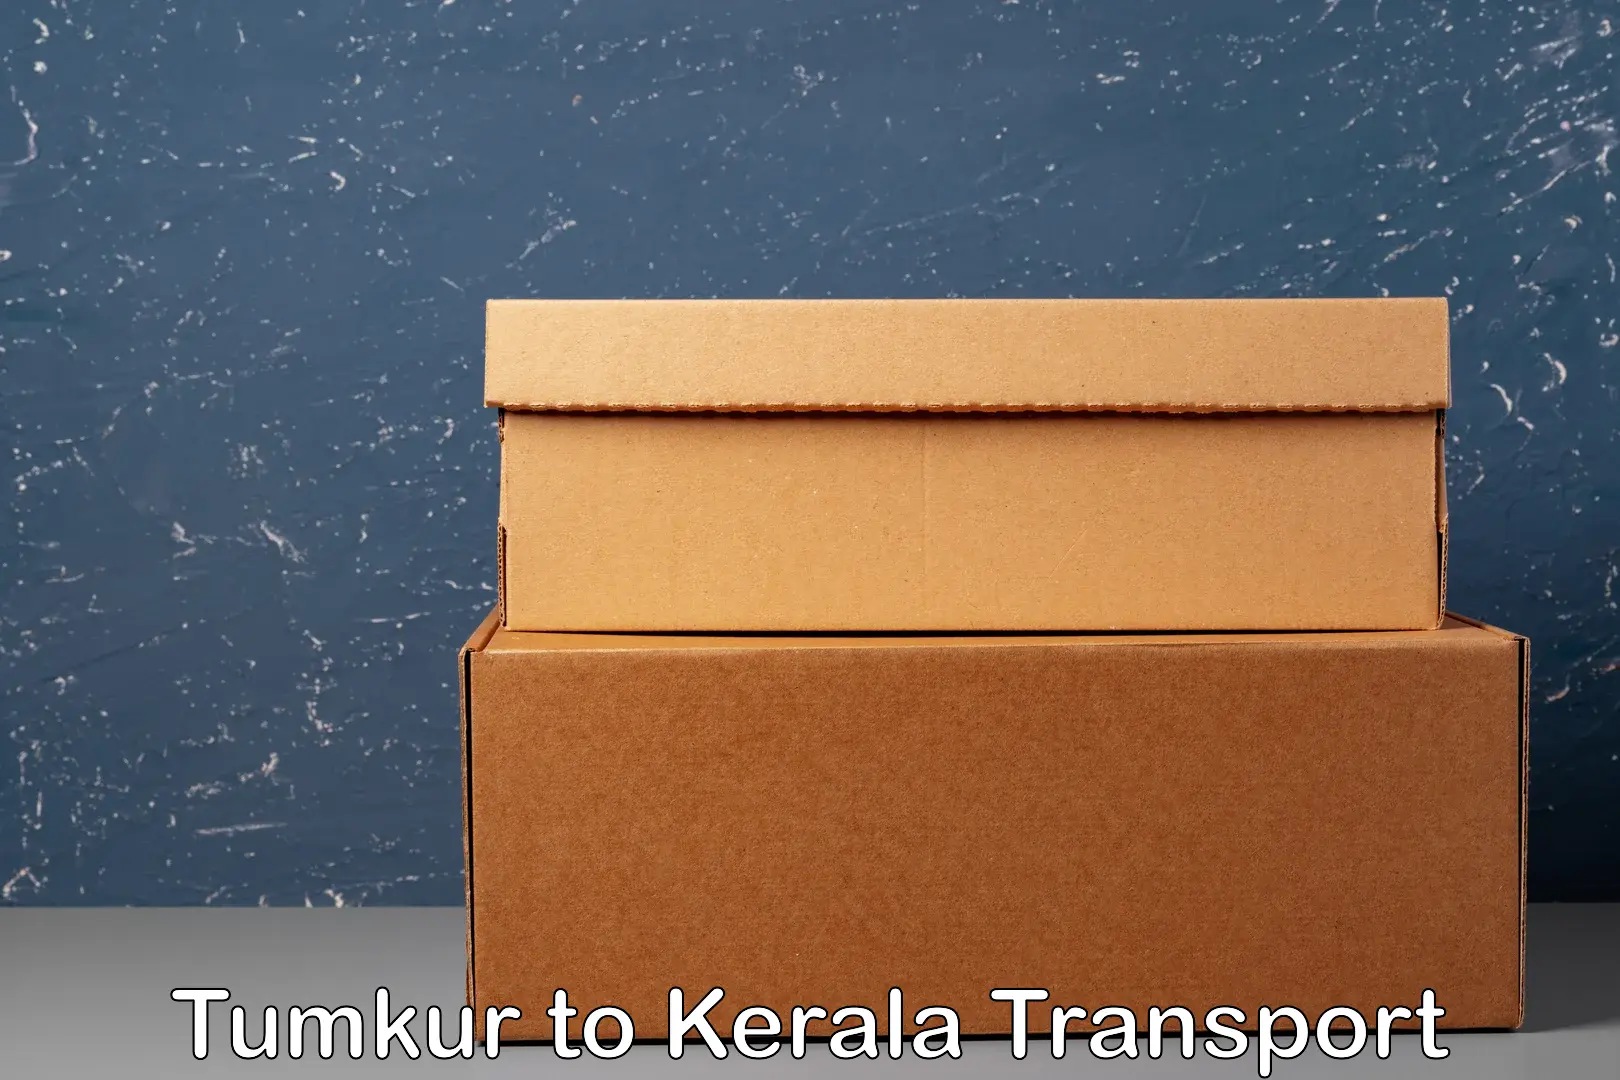 Online transport booking Tumkur to Kerala